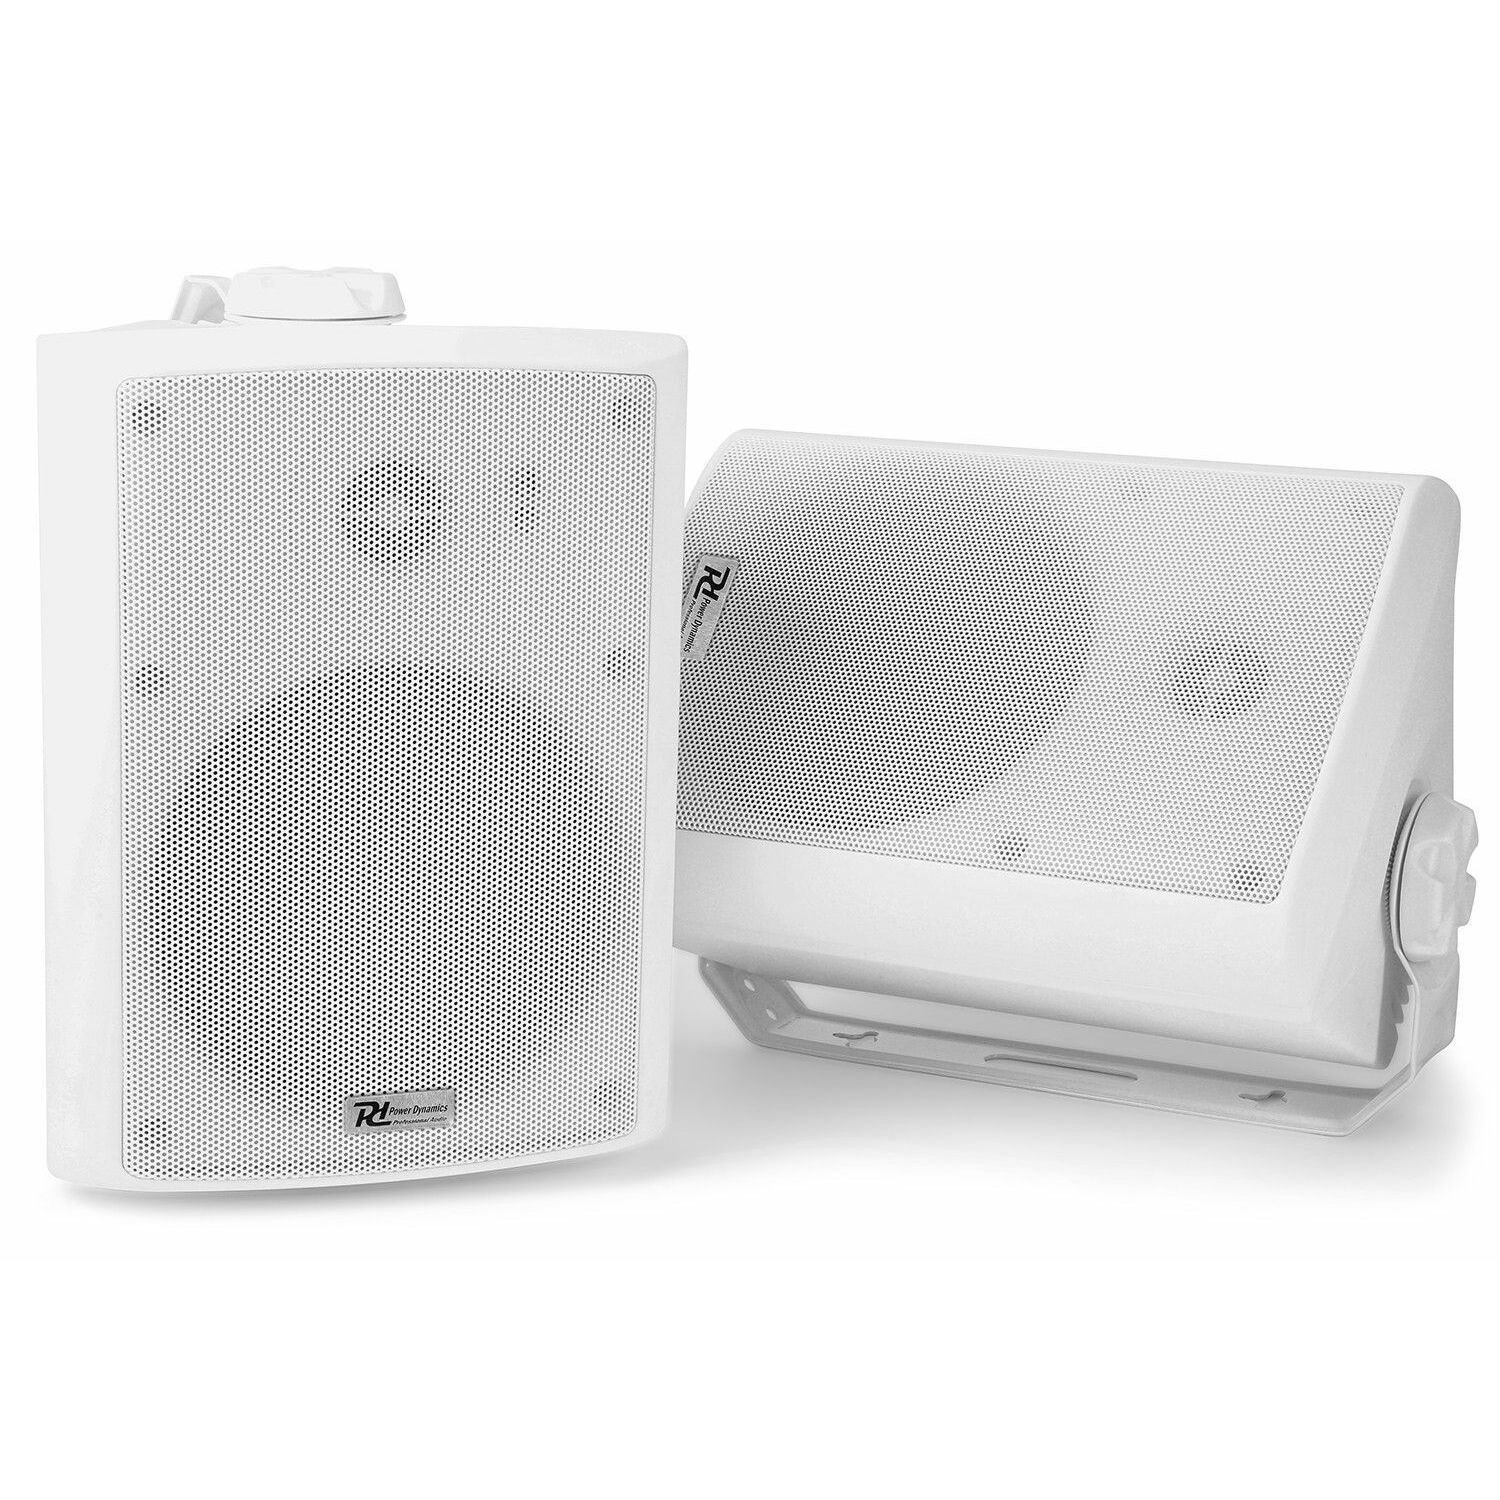 Retourdeal - Power Dynamics WS50A witte WiFi en Bluetooth speakerset -